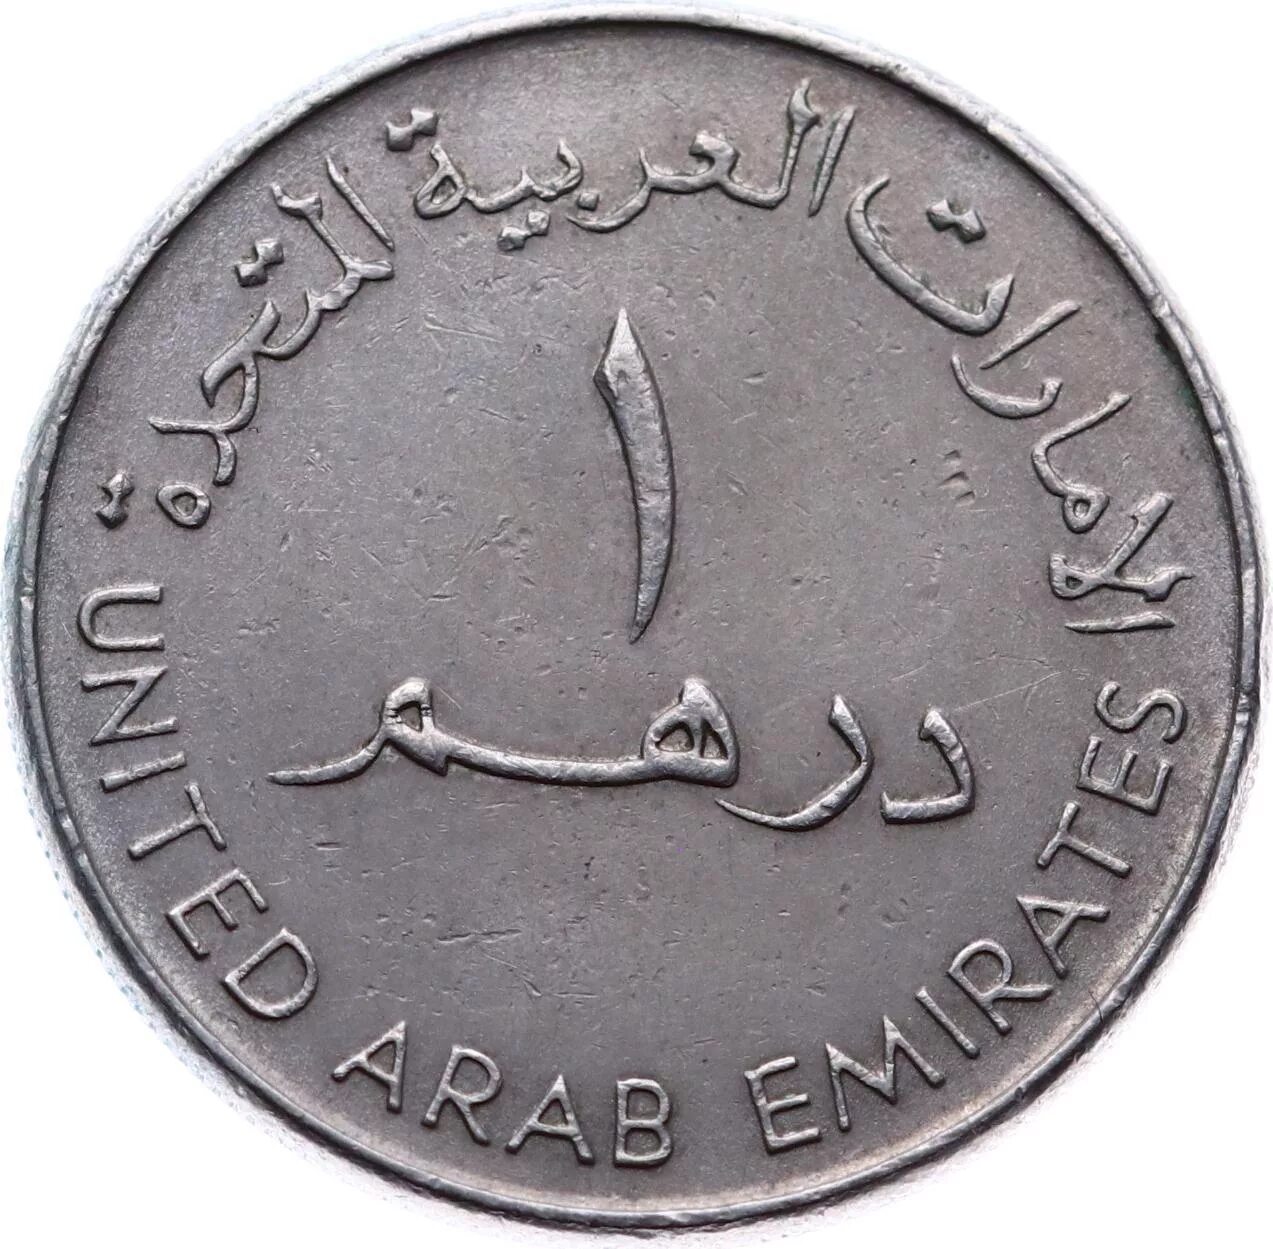 Монета United arab Emirates 2007 1428. Arab Emirates монета. United arab Emirates монета 1. Монета United arab Emirates 1993-1998. 130 дирхам